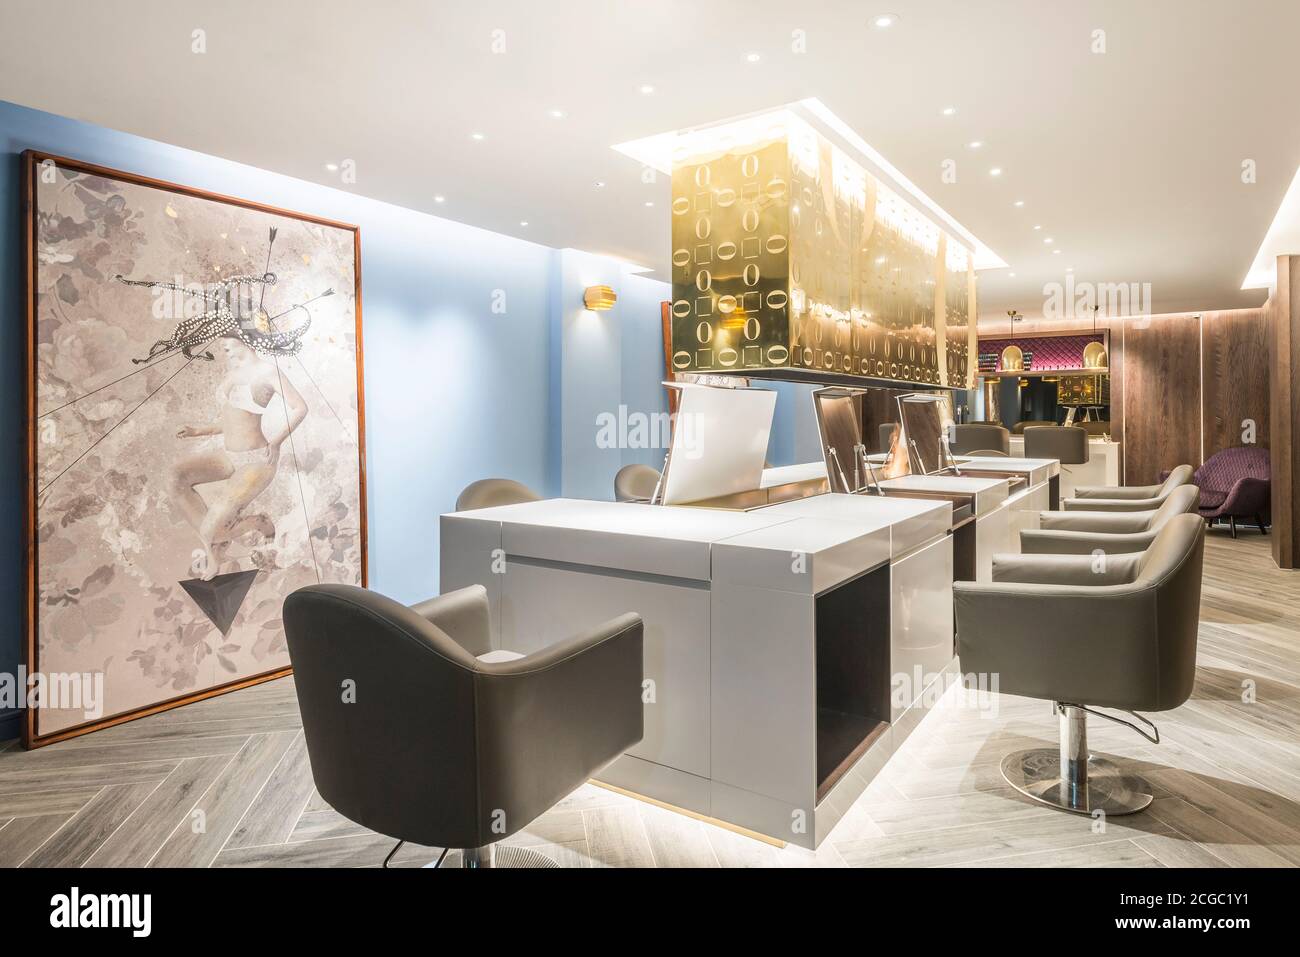 Postazioni per capelli in un lussuoso salone di parrucchiere tra il piano terra e il seminterrato con mobili su misura situato nel cuore di Soho, Londra, Regno Unito. Progetto completato nel novembre 2017. Foto Stock